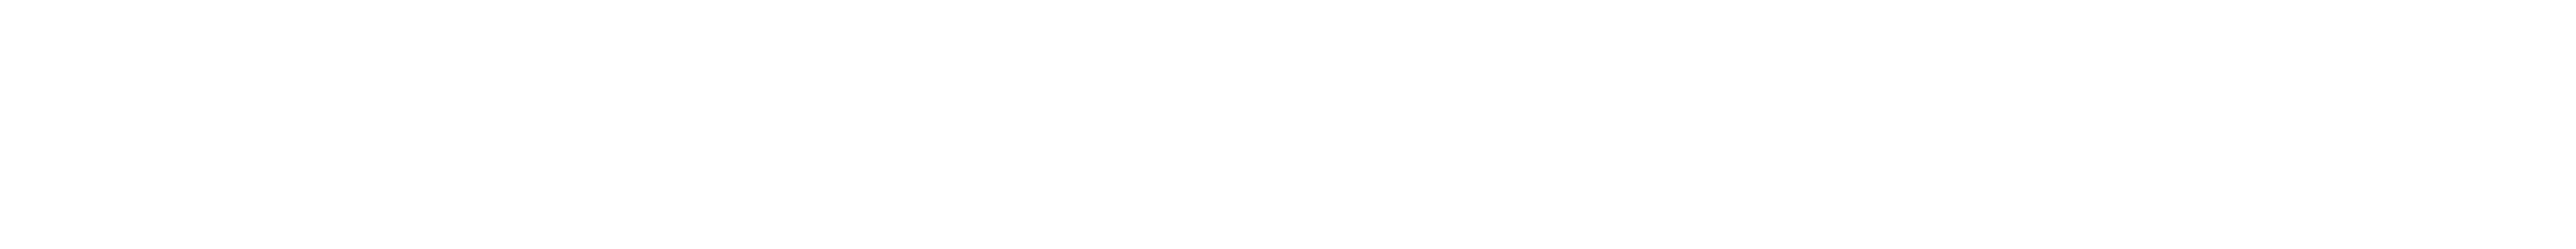 Marty's Waffles logos